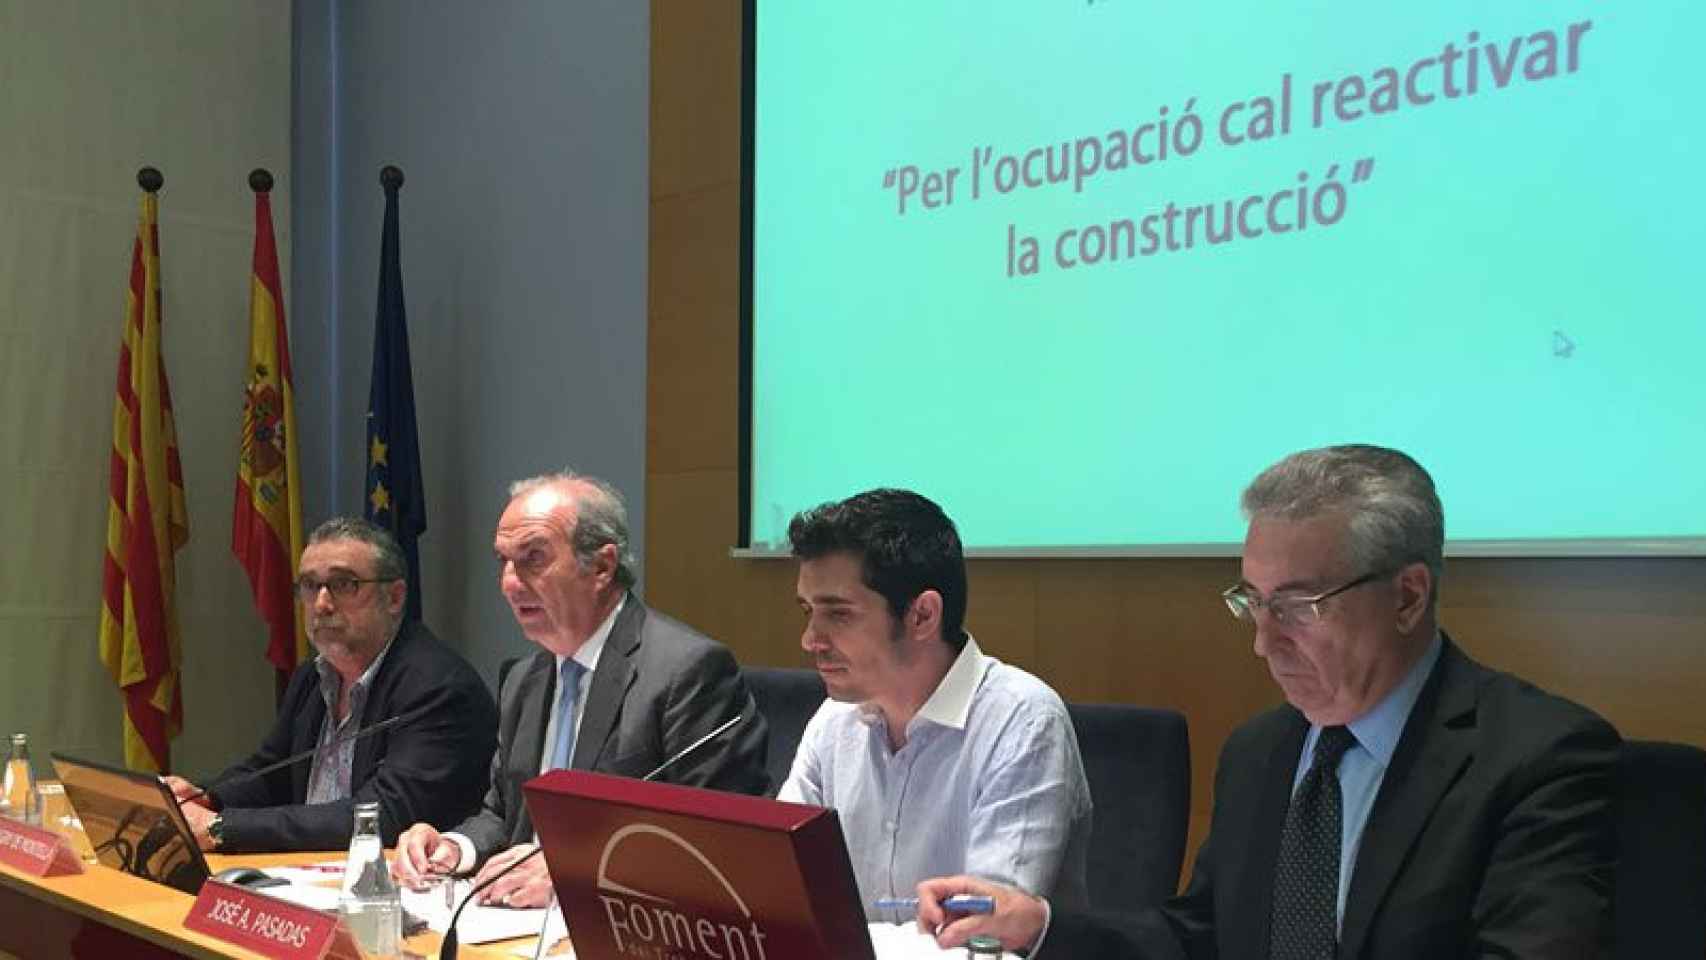 Los firmantes del manifiesto: José Cachinero (CCOO), Joaquim Gay de Montellà (Foment), José Antonio Pasadas (UGT) y Joaquim Llansó (Foment).